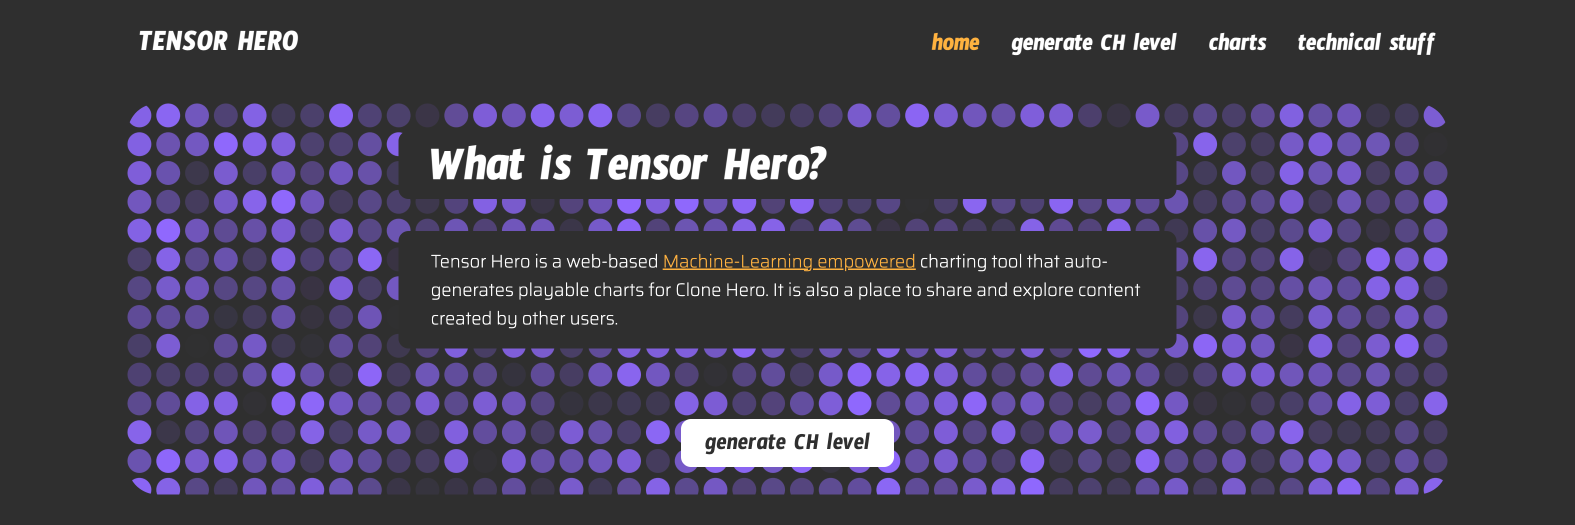 Tensor Hero Landing Page